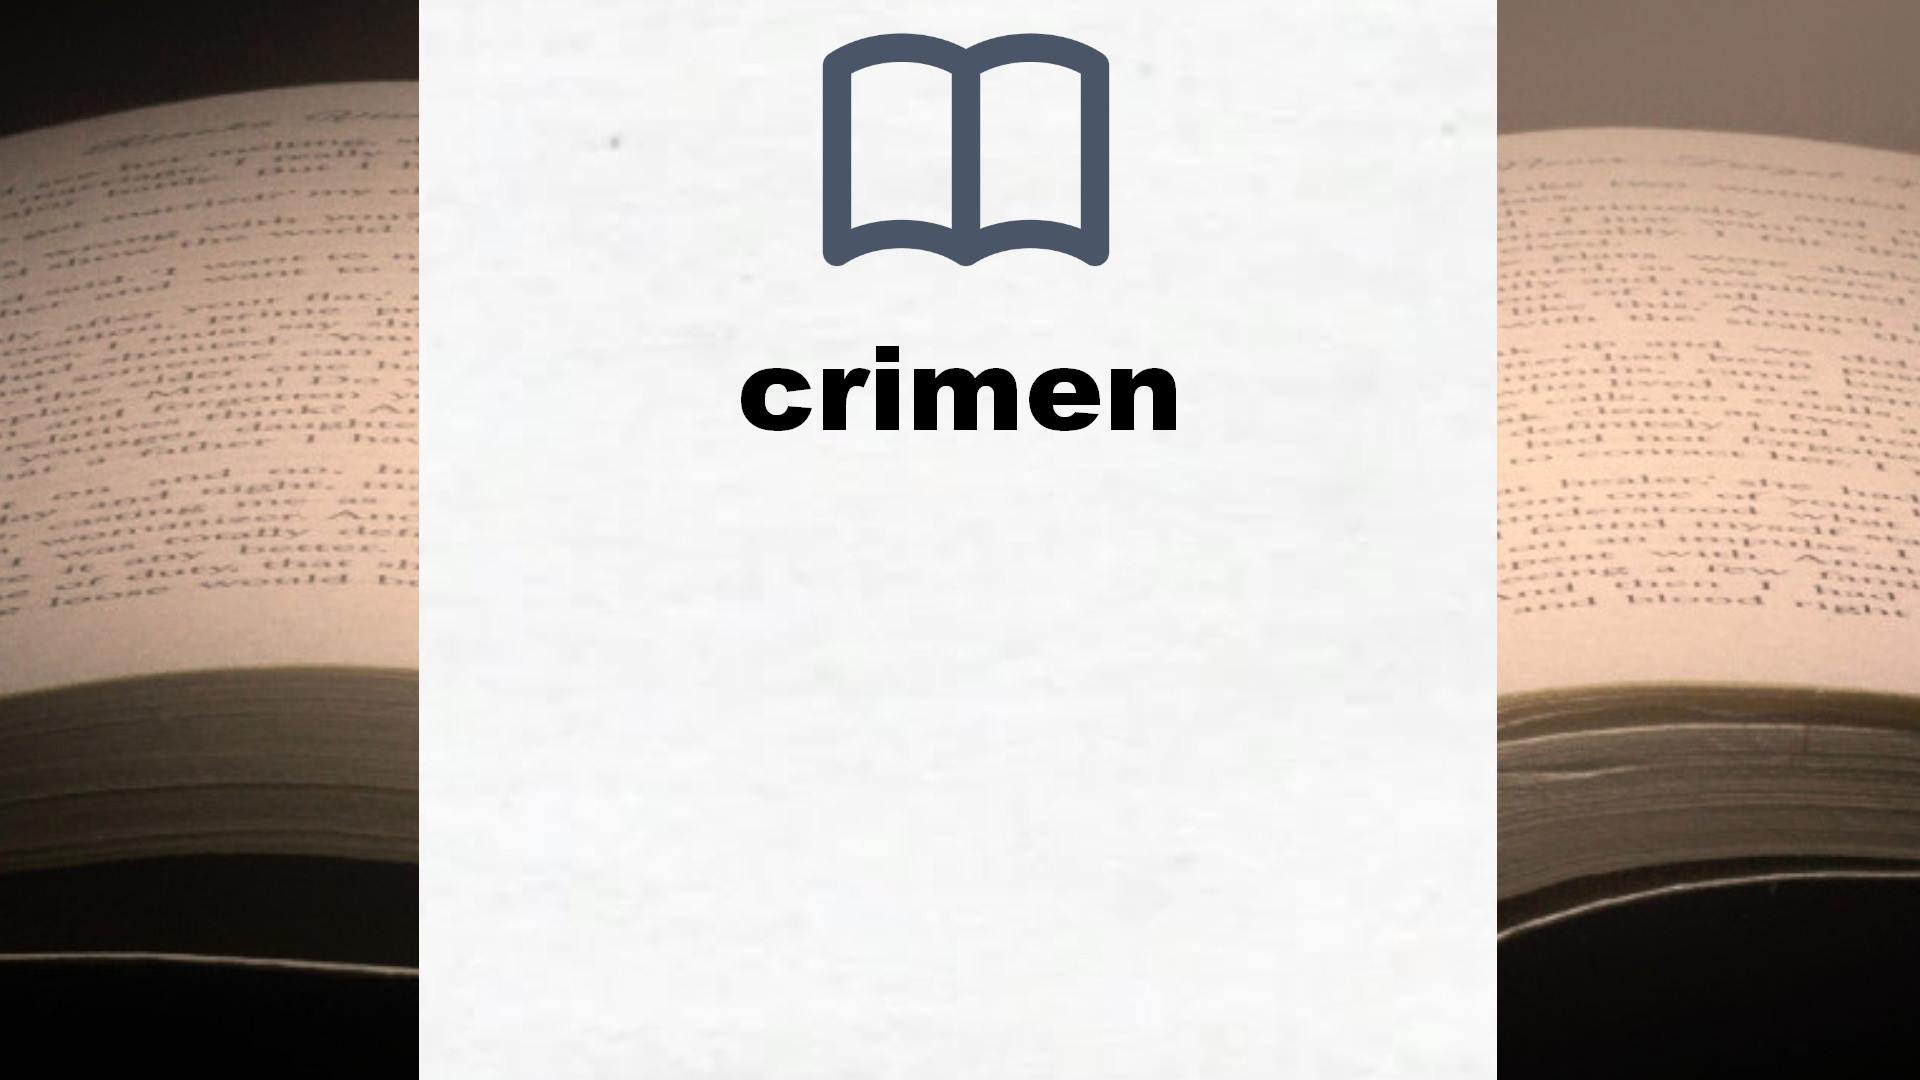 Libros sobre crimen